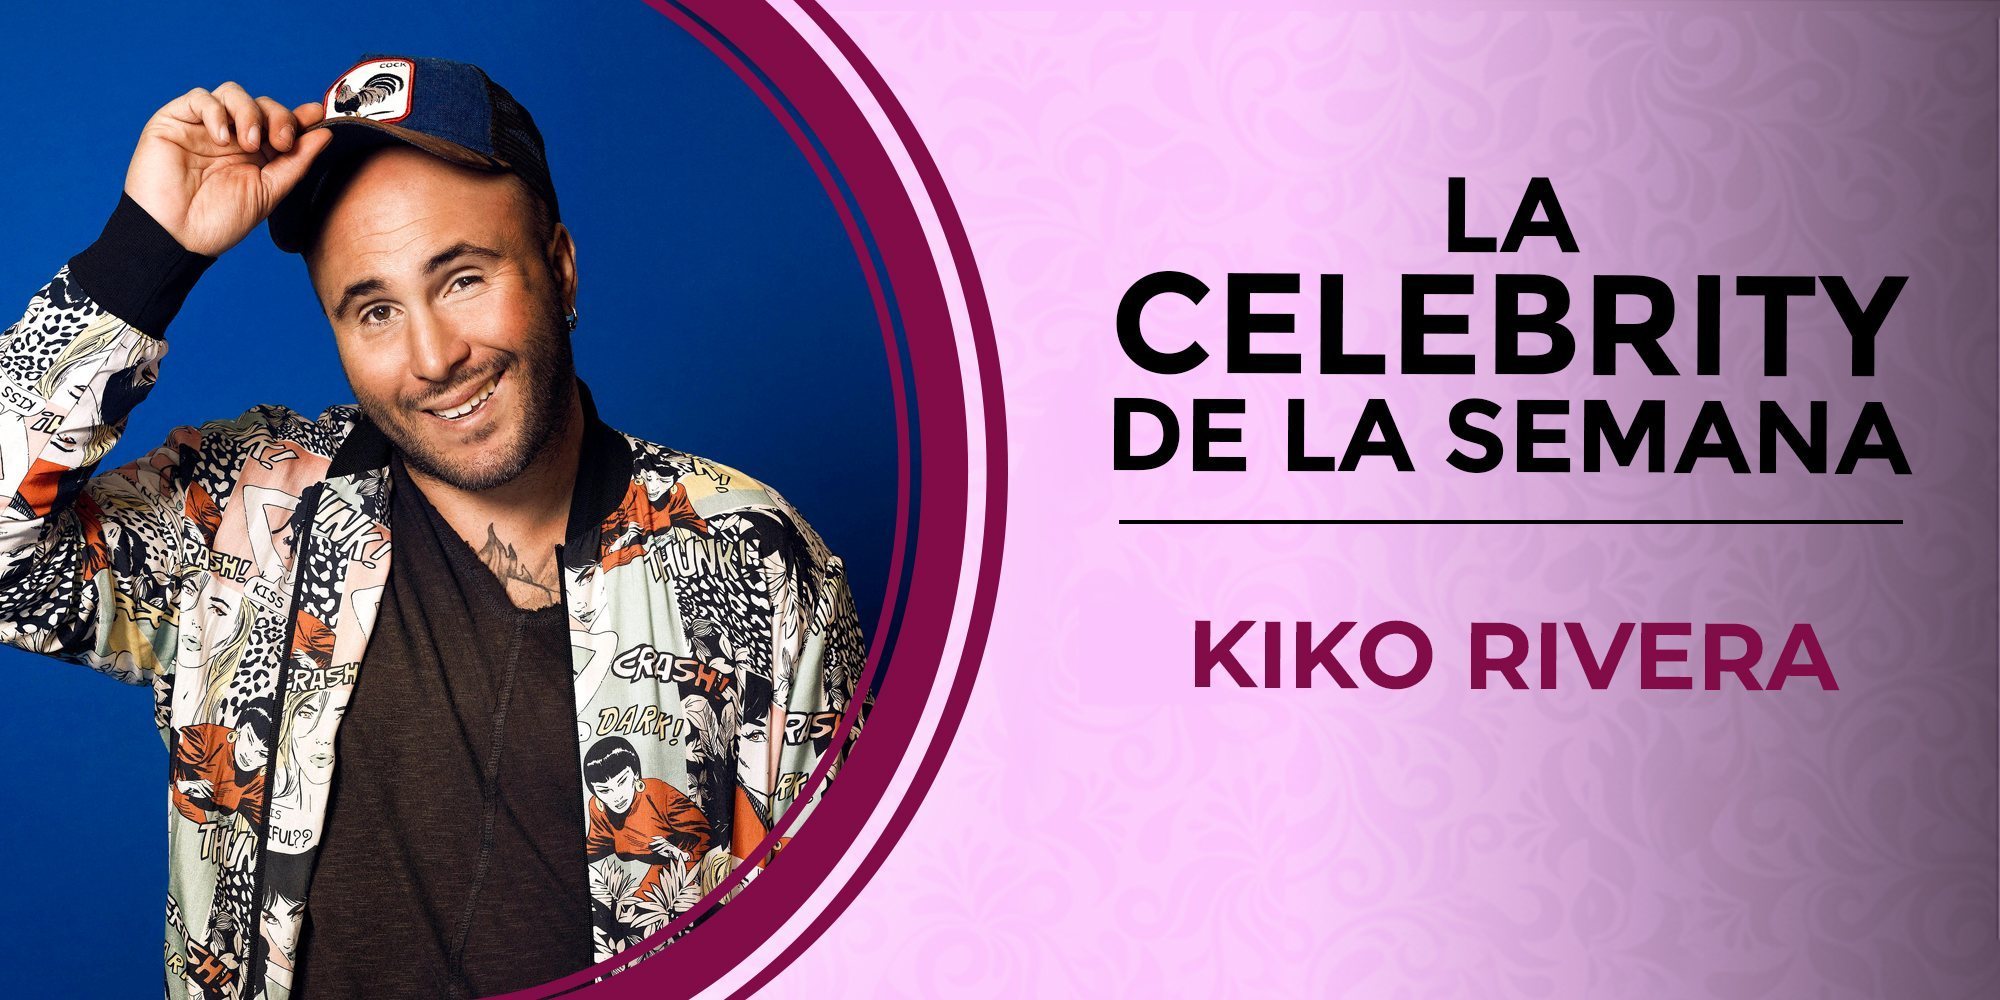 Kiko Rivera se convierte en la celebrity de la semana por su confesión en 'GH DÚO'